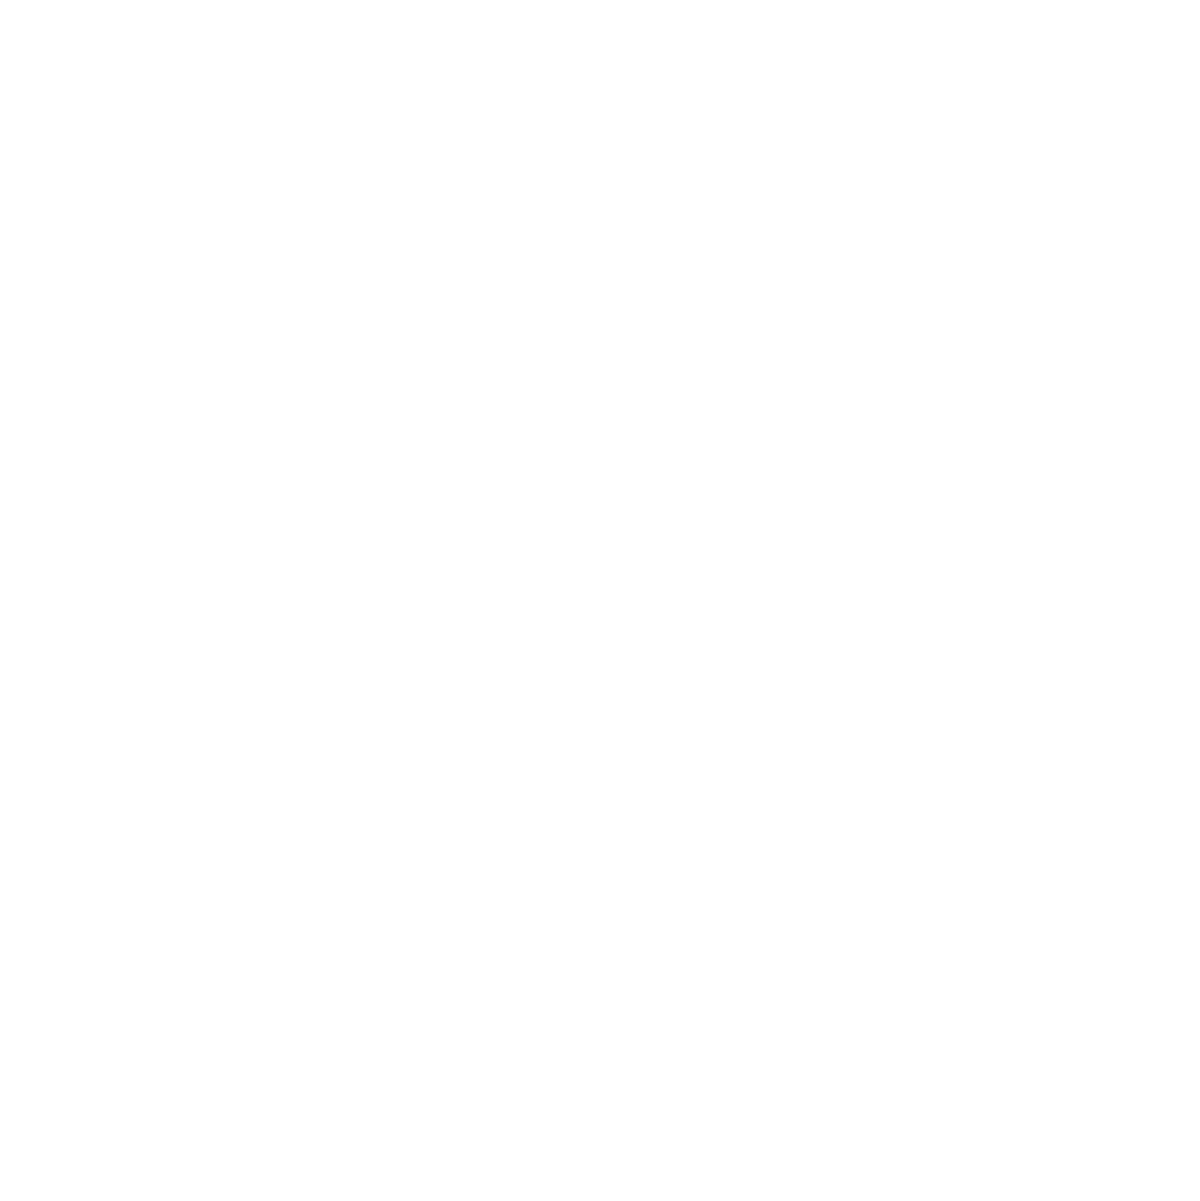 S.C. Bach